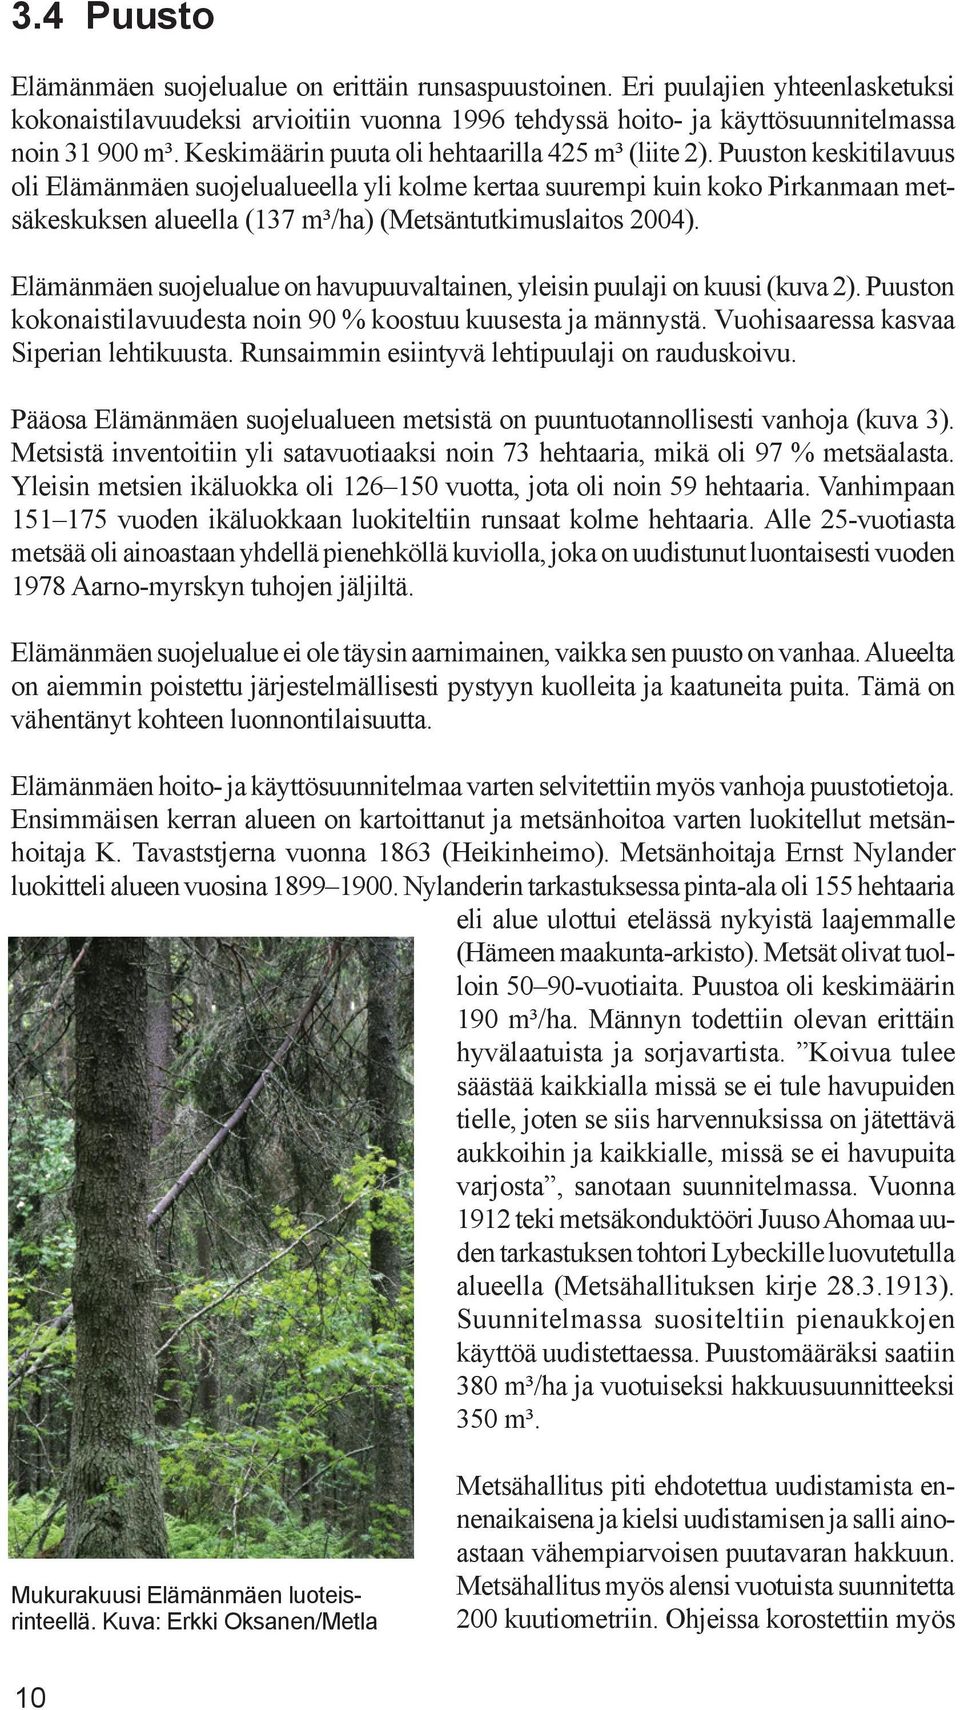 Puuston keski tilavuus oli Elämänmäen suojelualueella yli kolme kertaa suurempi kuin koko Pirkanmaan metsäkeskuksen alueella (137 m³/ha) (Metsäntutkimuslaitos 2004).